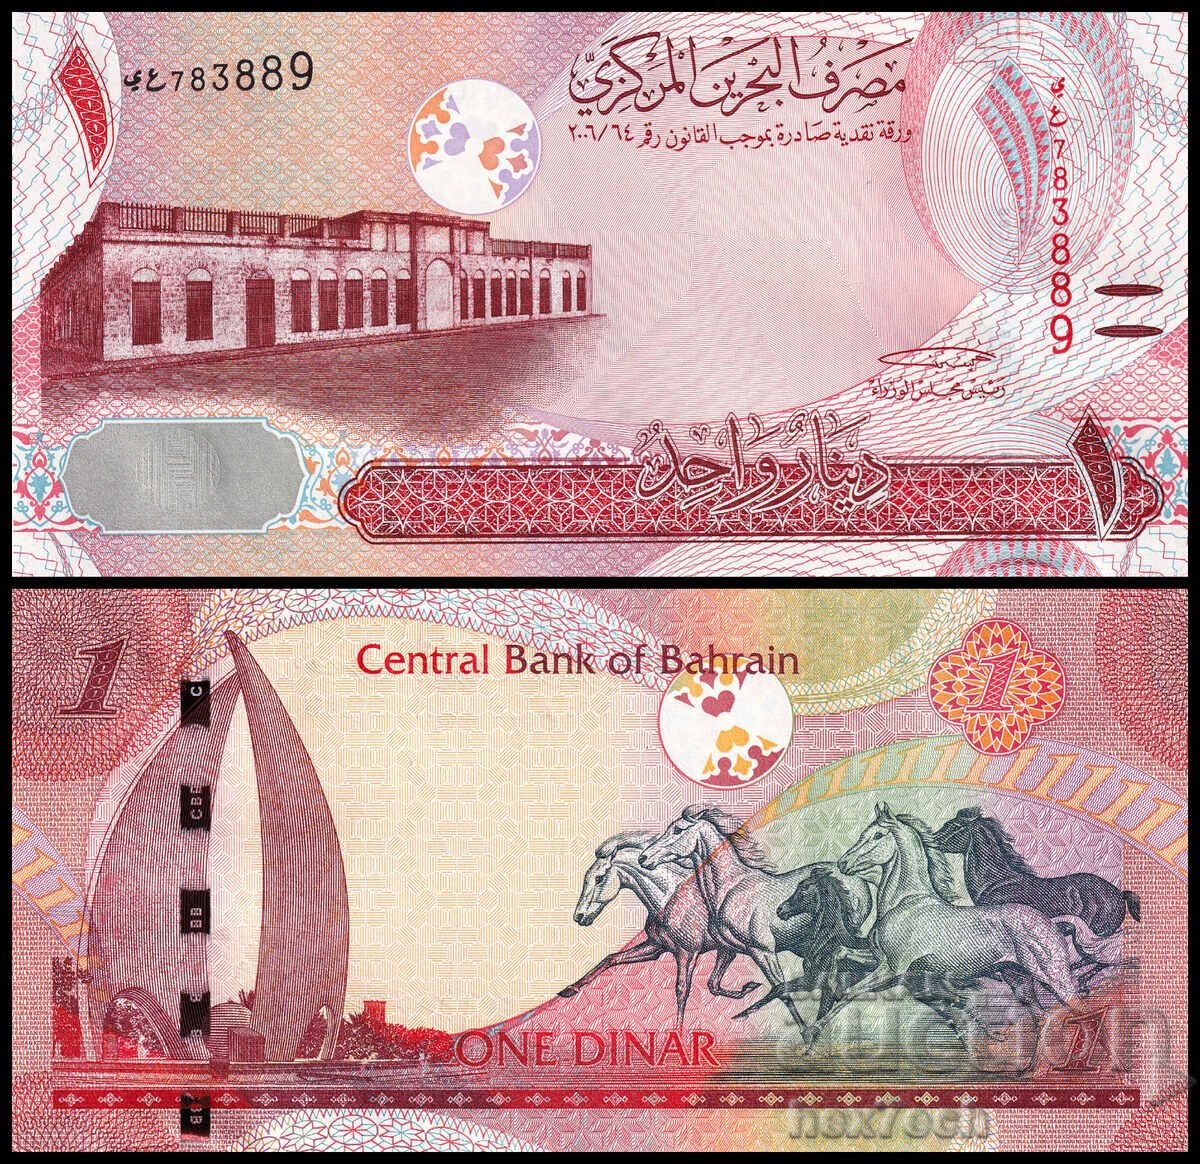 ❤️ ⭐ Bahrain 2006-2018 1 Dinar UNC New ⭐ ❤️